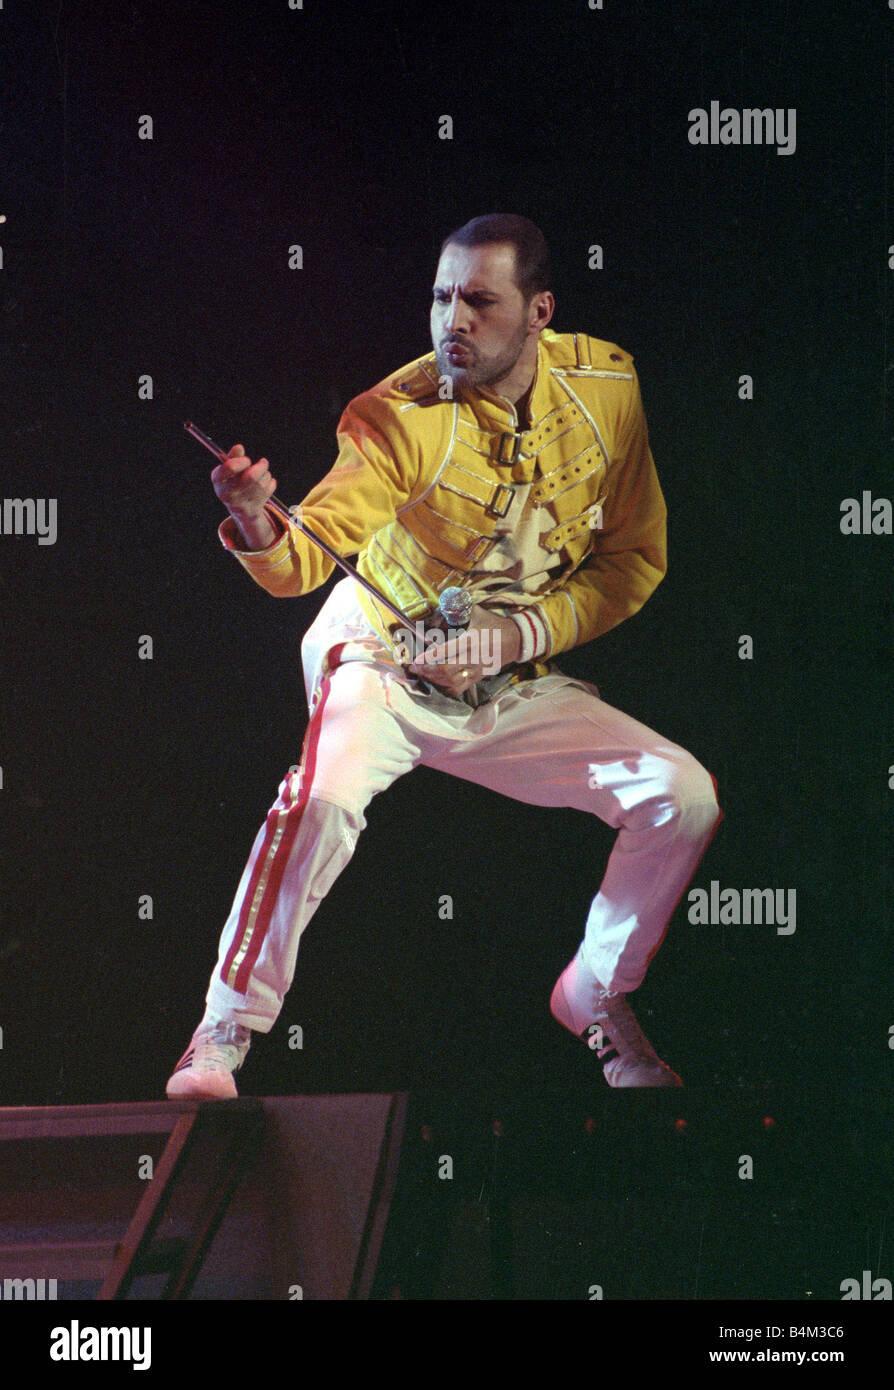 Freddie mercury en el escenario fotografías e imágenes de alta resolución -  Alamy